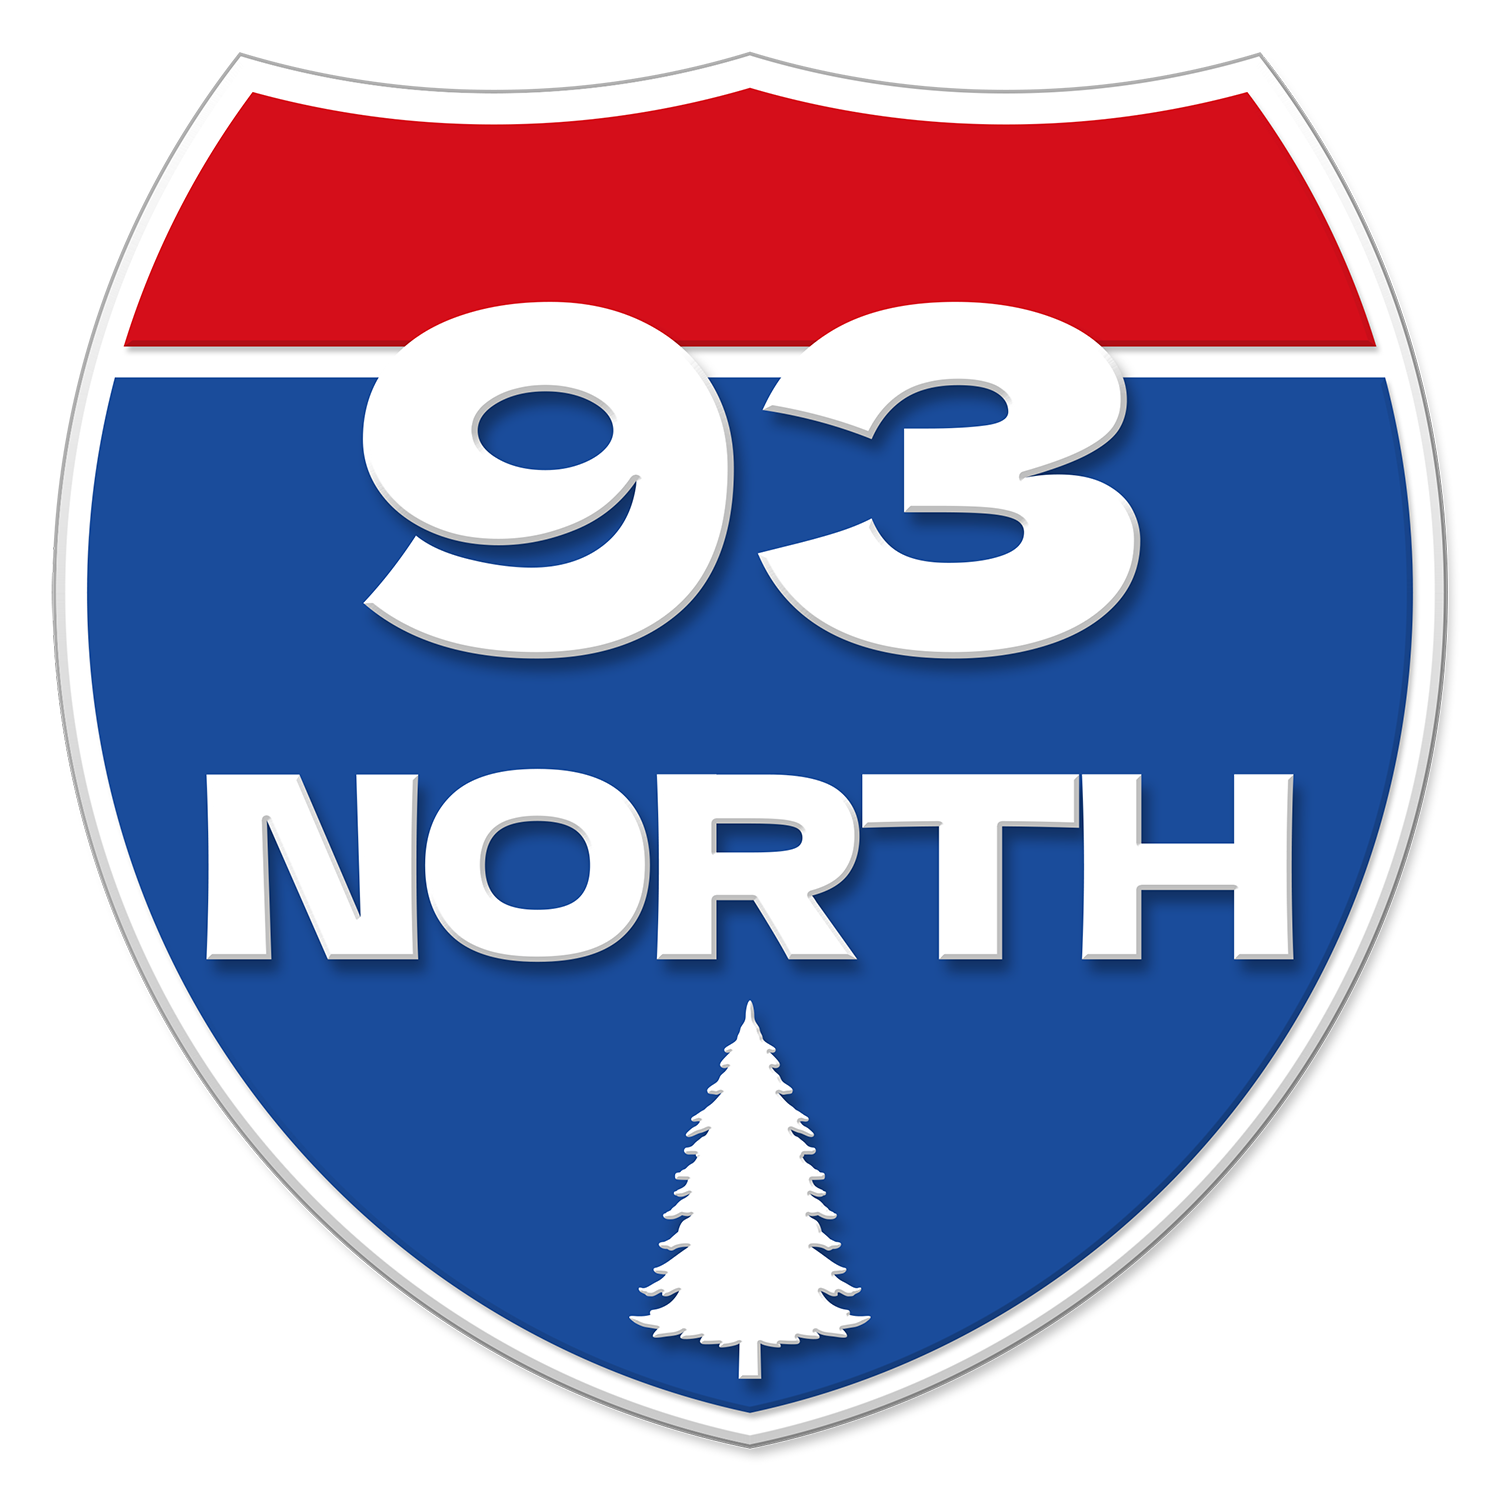 93 North